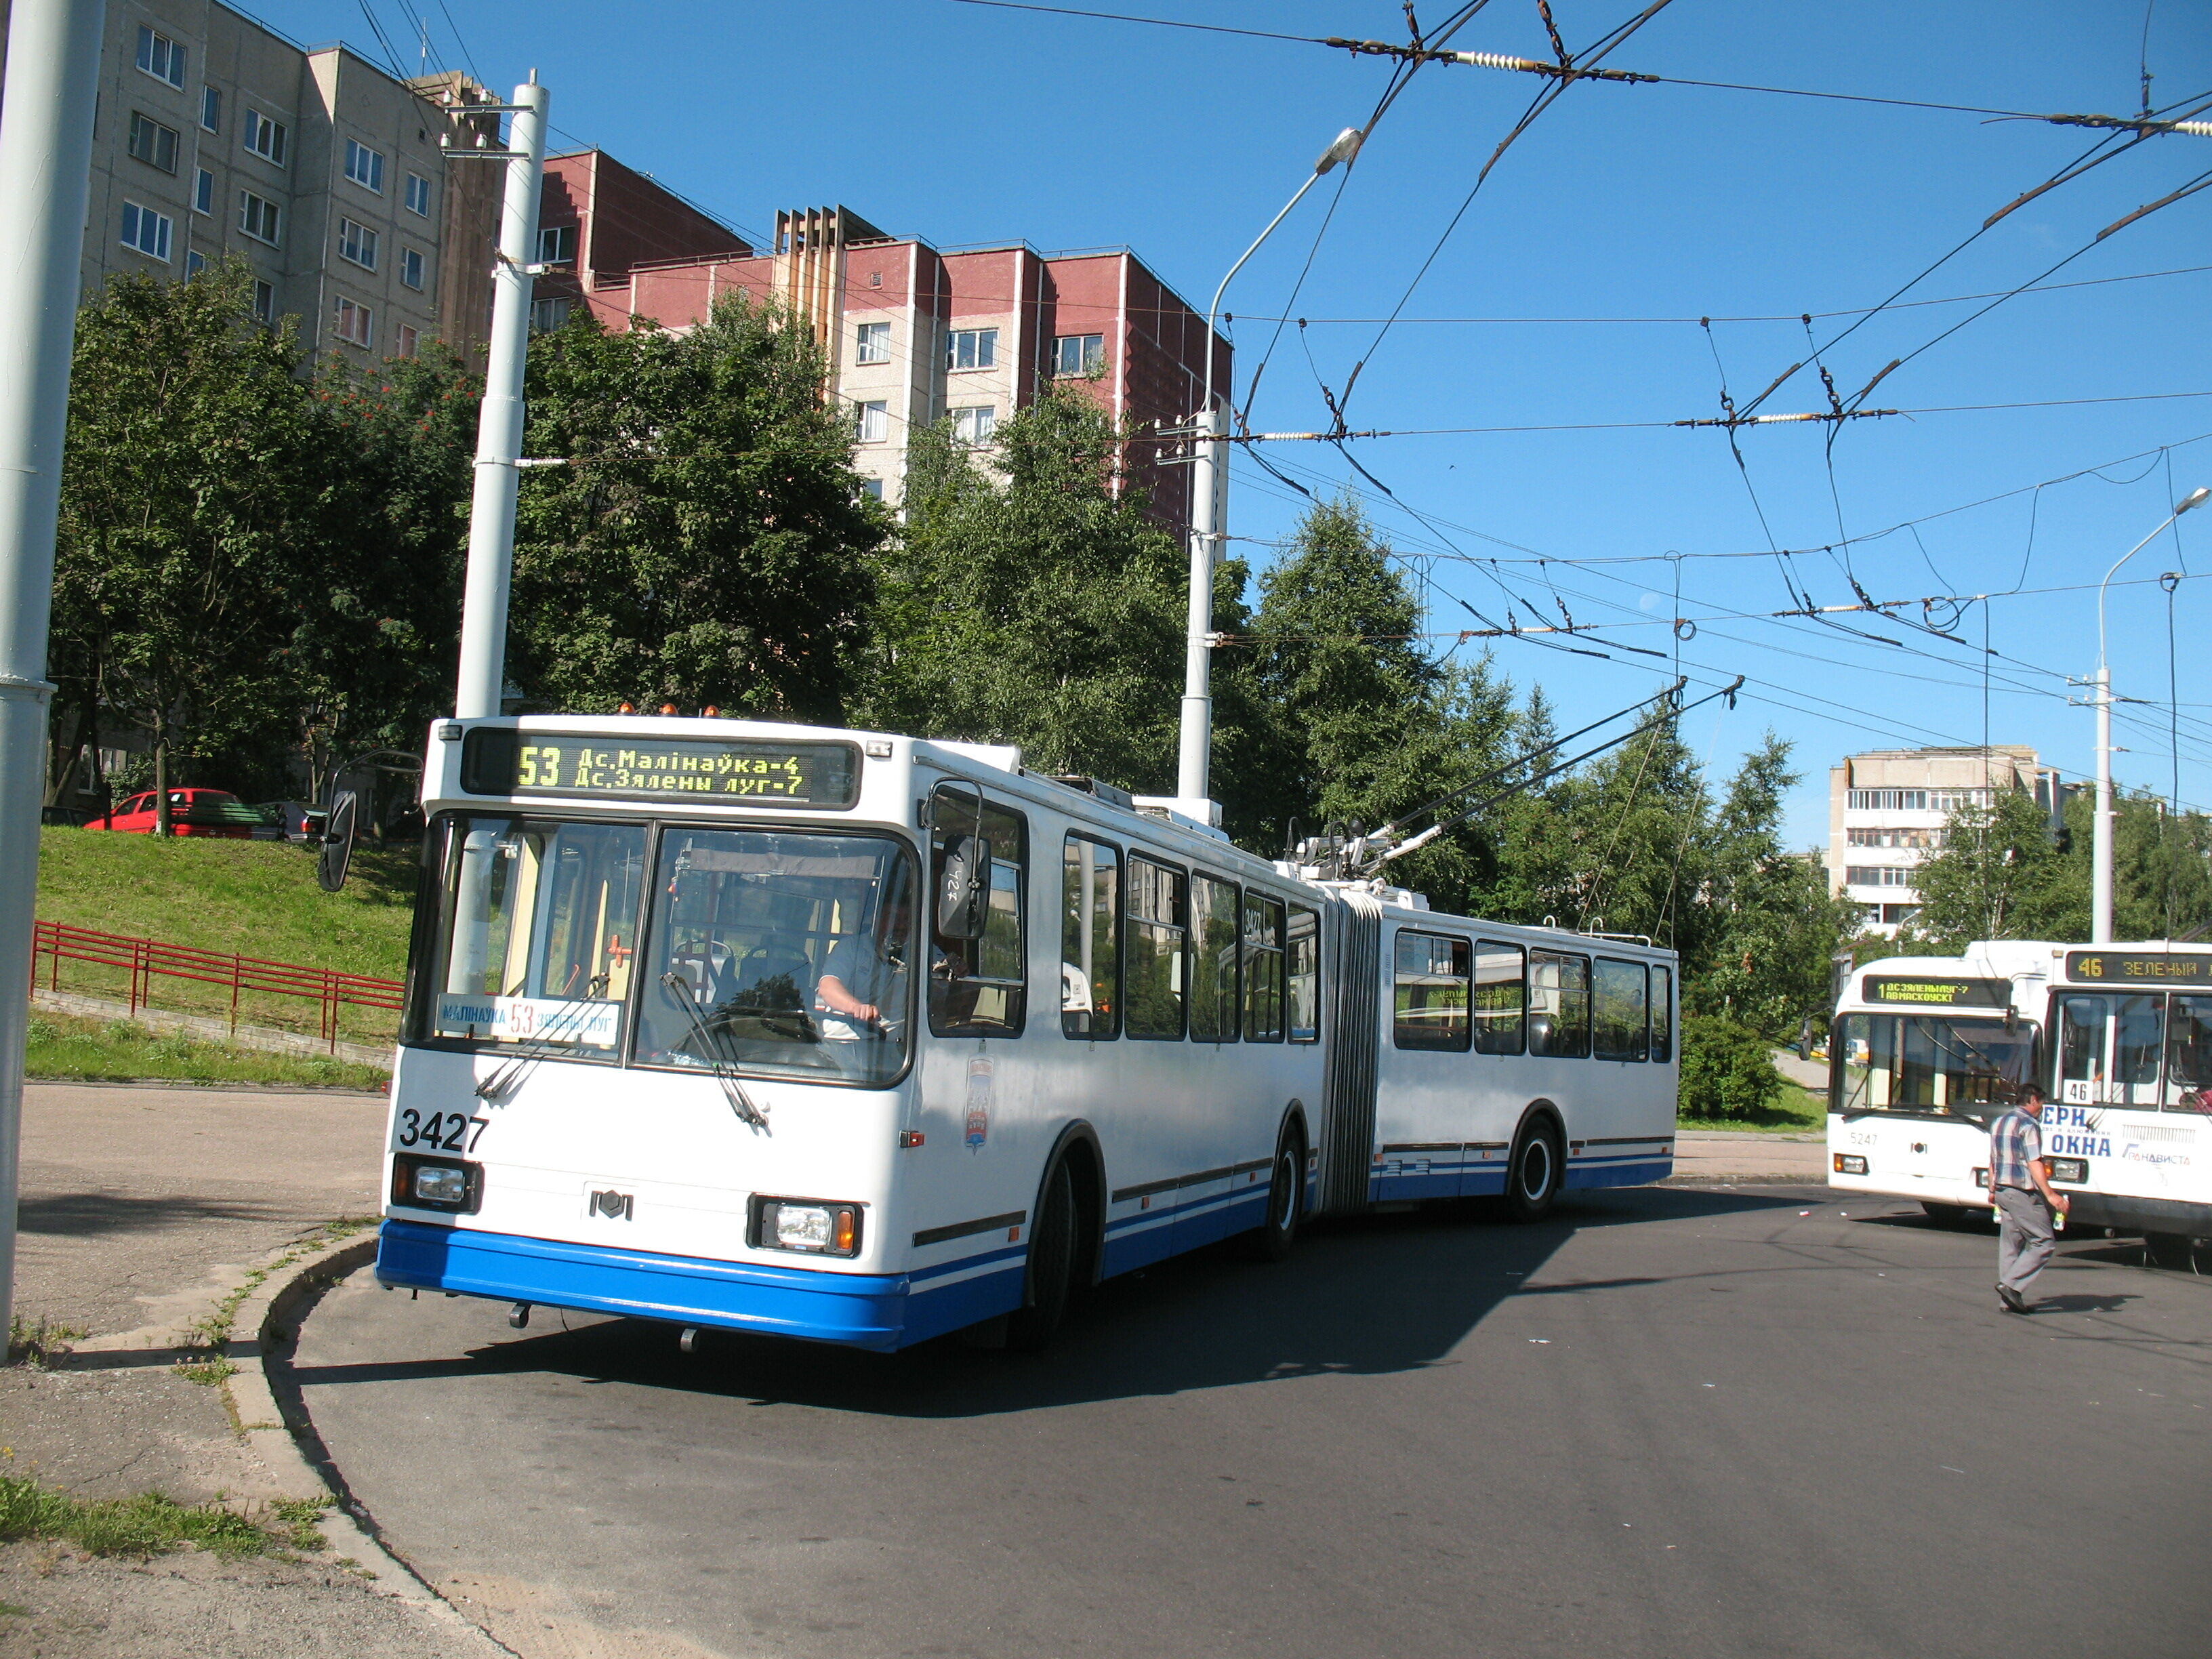 Троллейбус АКСМ-213 3427